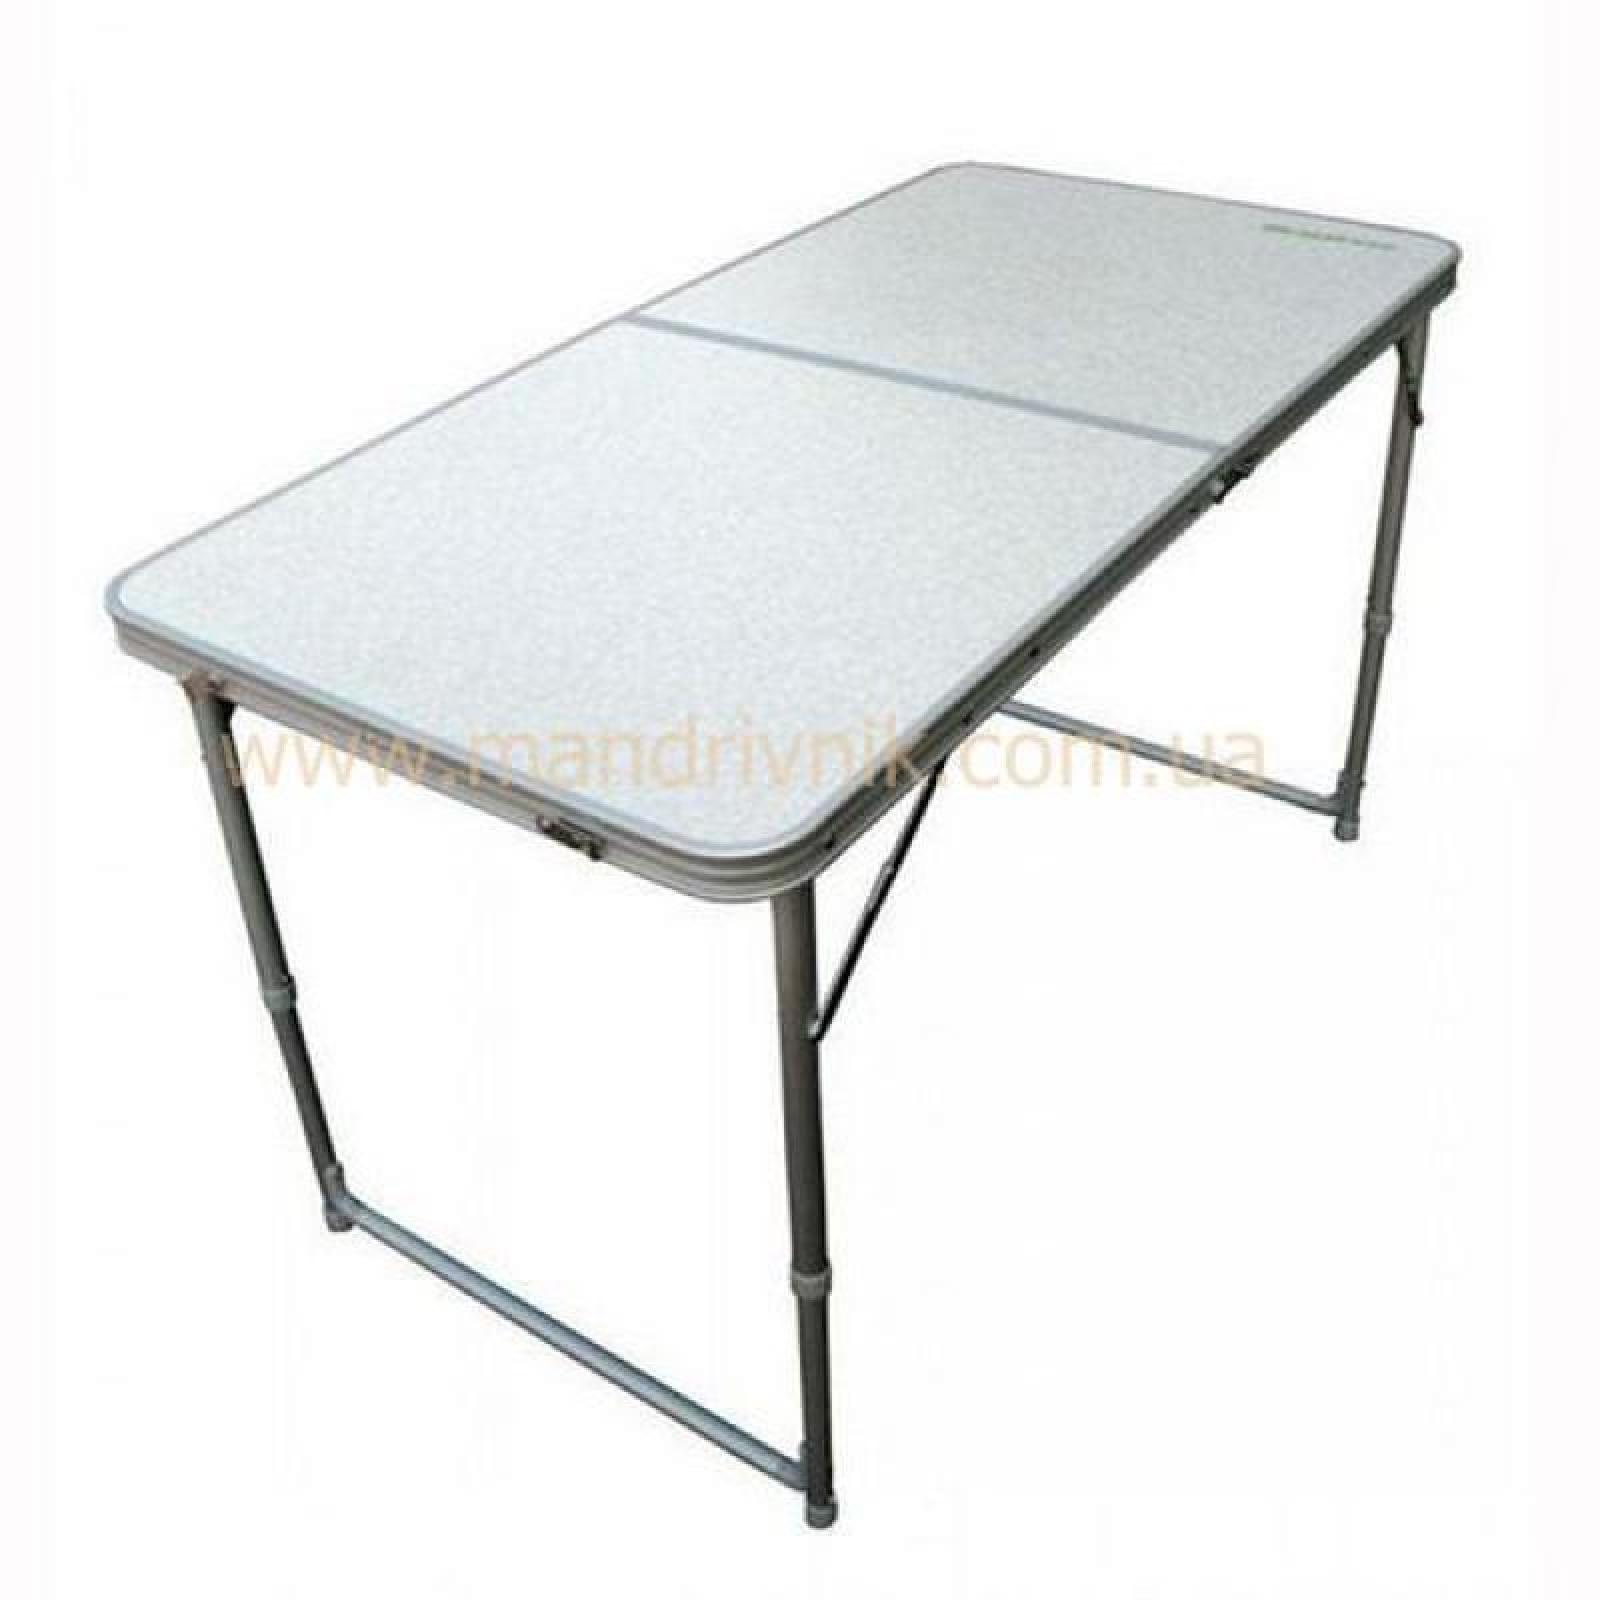 Походный столик купить. Стол складной avi-Outdoor TS 6024. Стол Helios HS-ta-519 складной. Стол складной 70x70 см алюминиевый Boyscout. Стол складной 8812a.